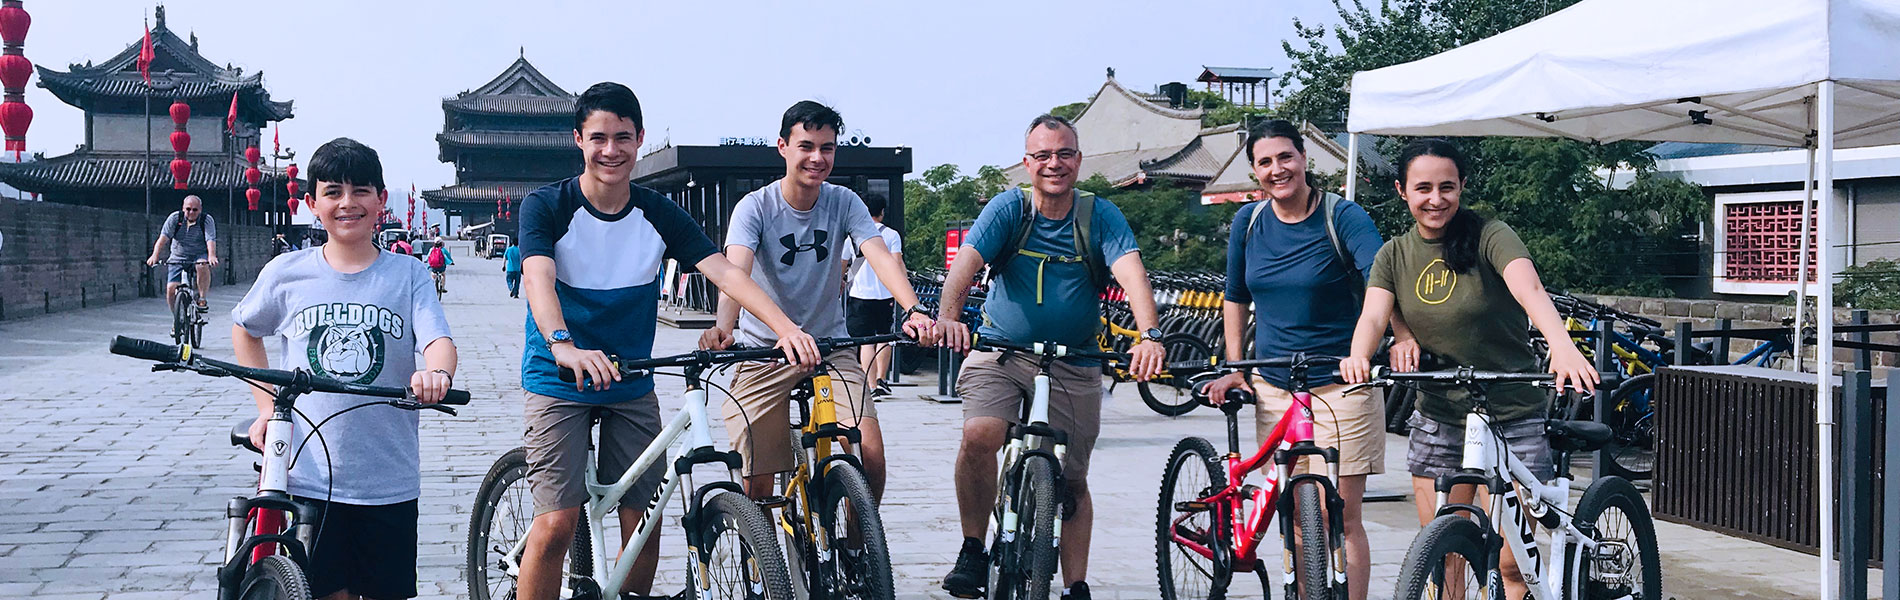 Ride Bike Xian City Wall